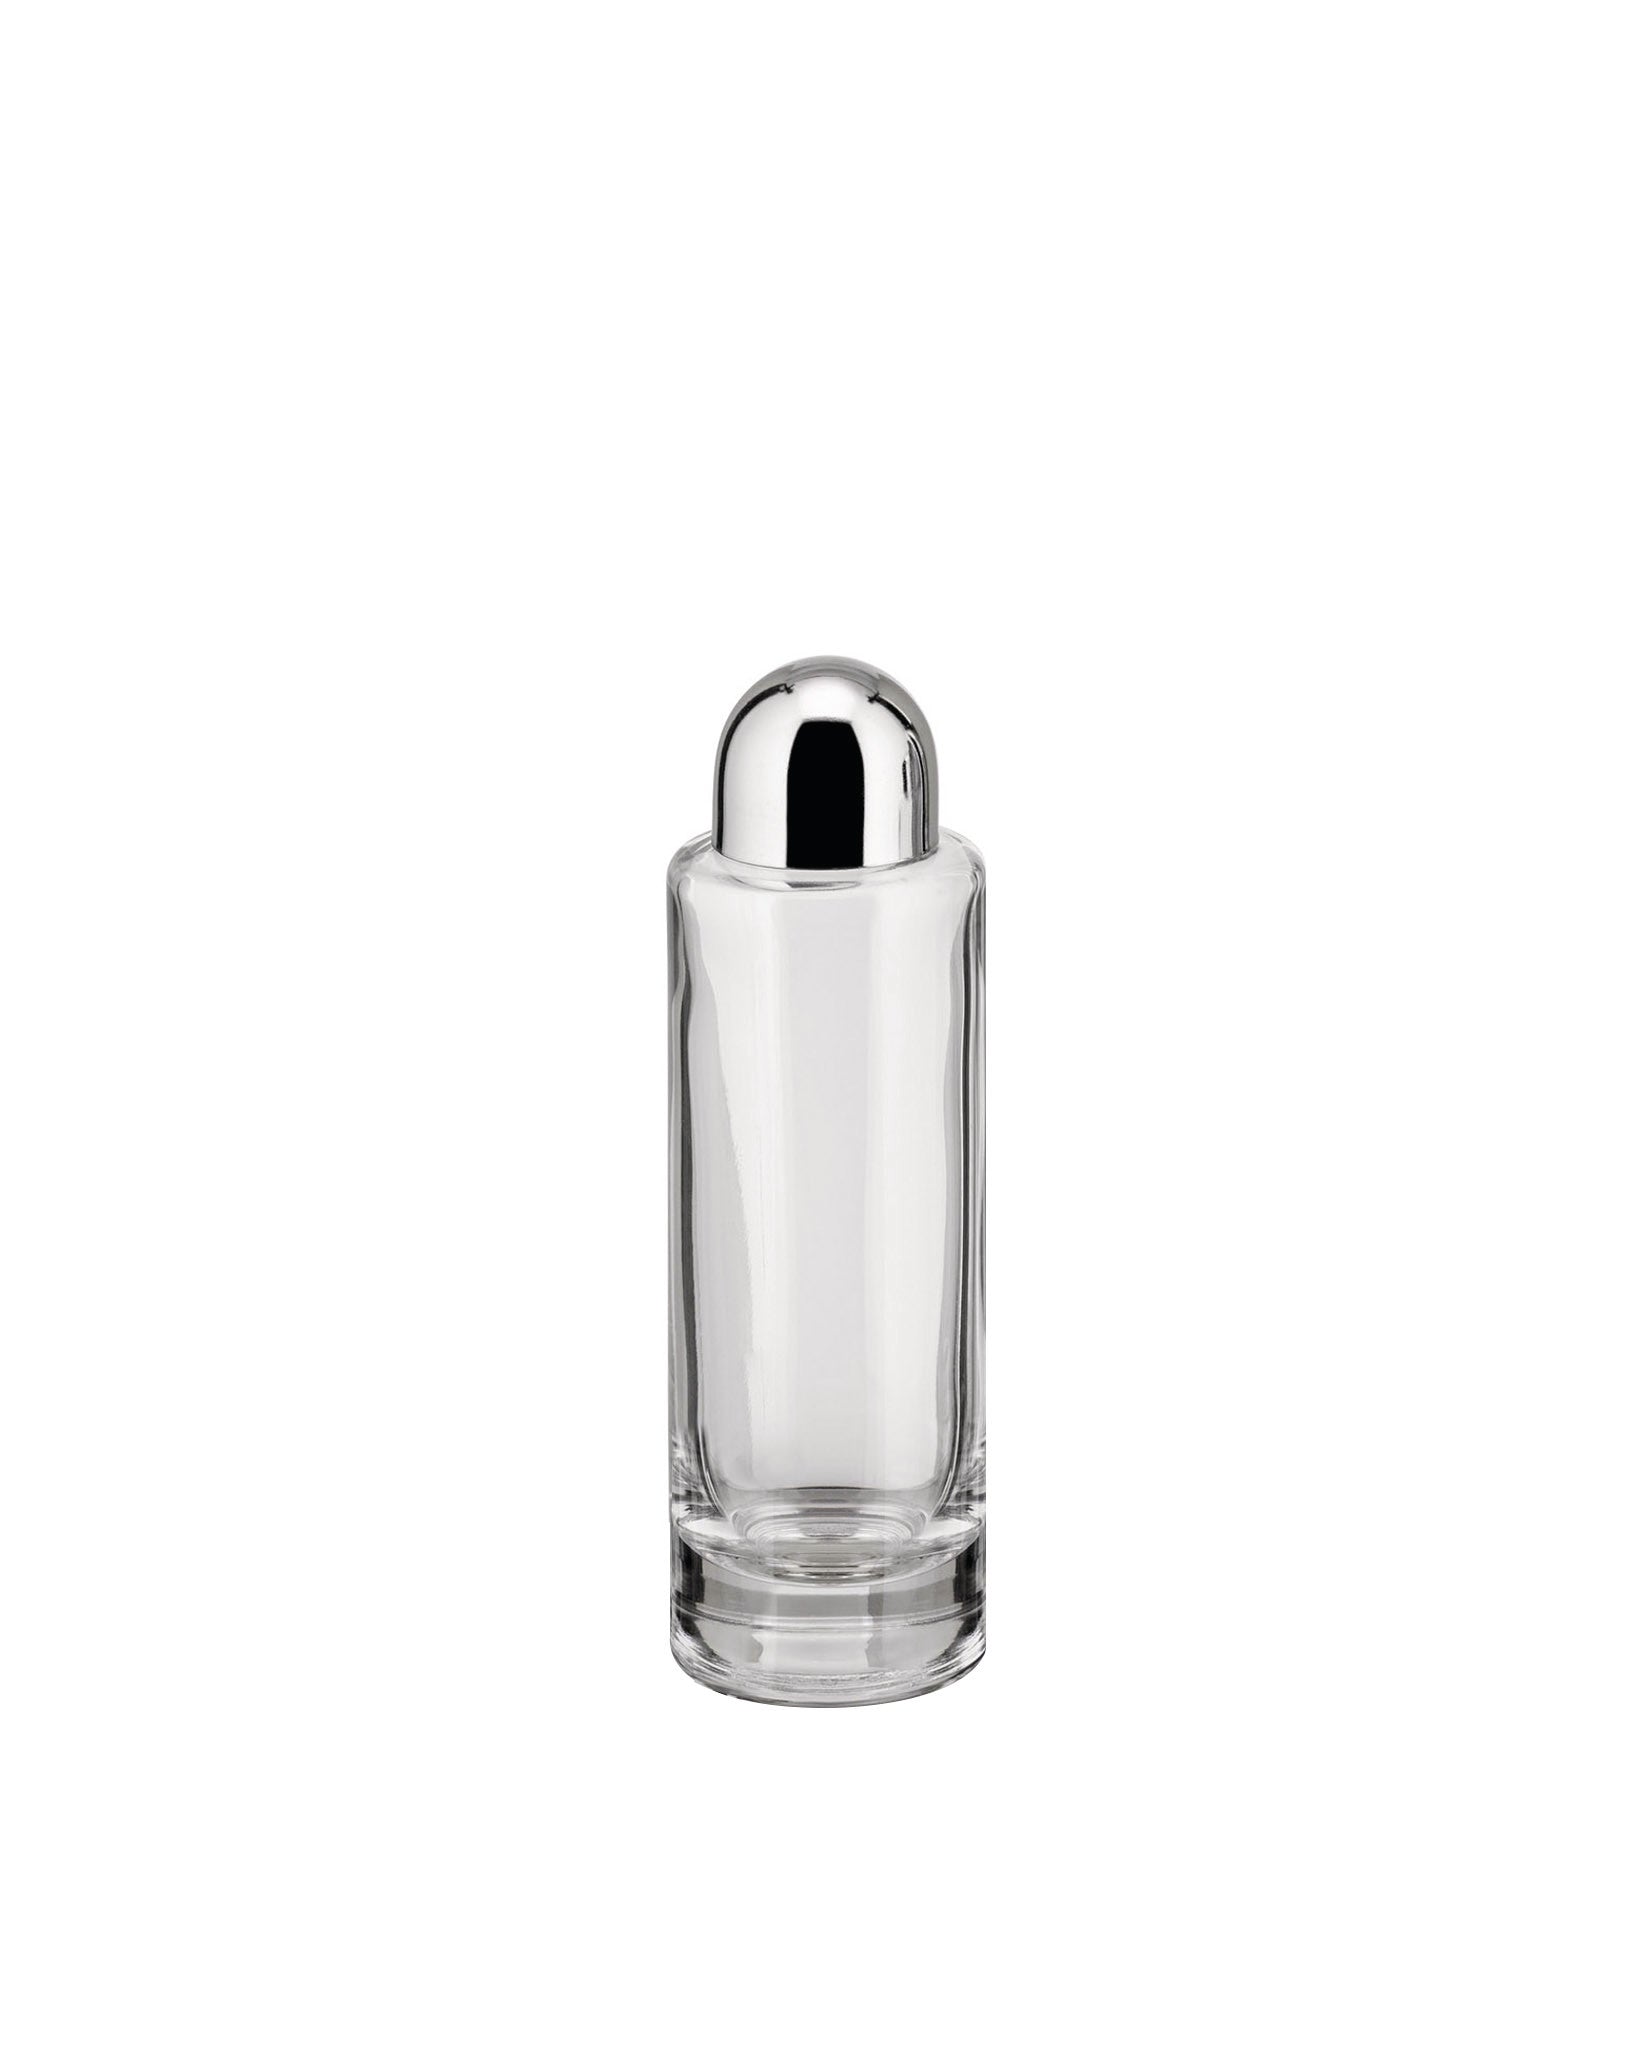 Alessi Oliette Oil Bottle Holder - White